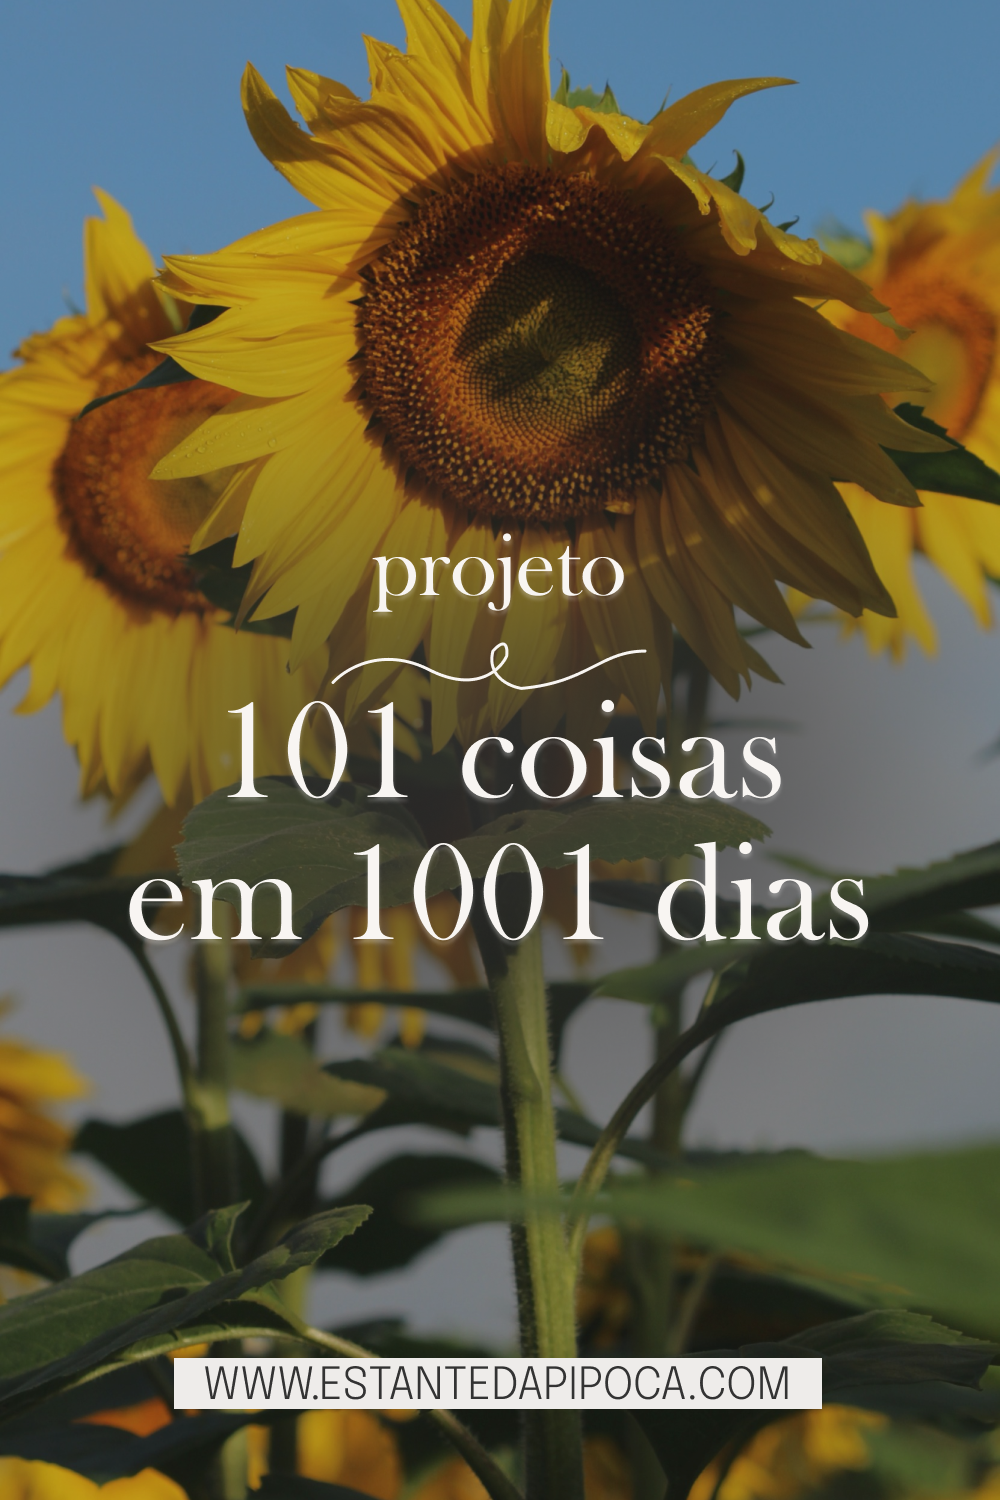 Imagem para pinterest. No fundo, uma foto de girassol. 
Escrita: projeto 101 coisas em 1001 dias
www.estantedapipoca.com